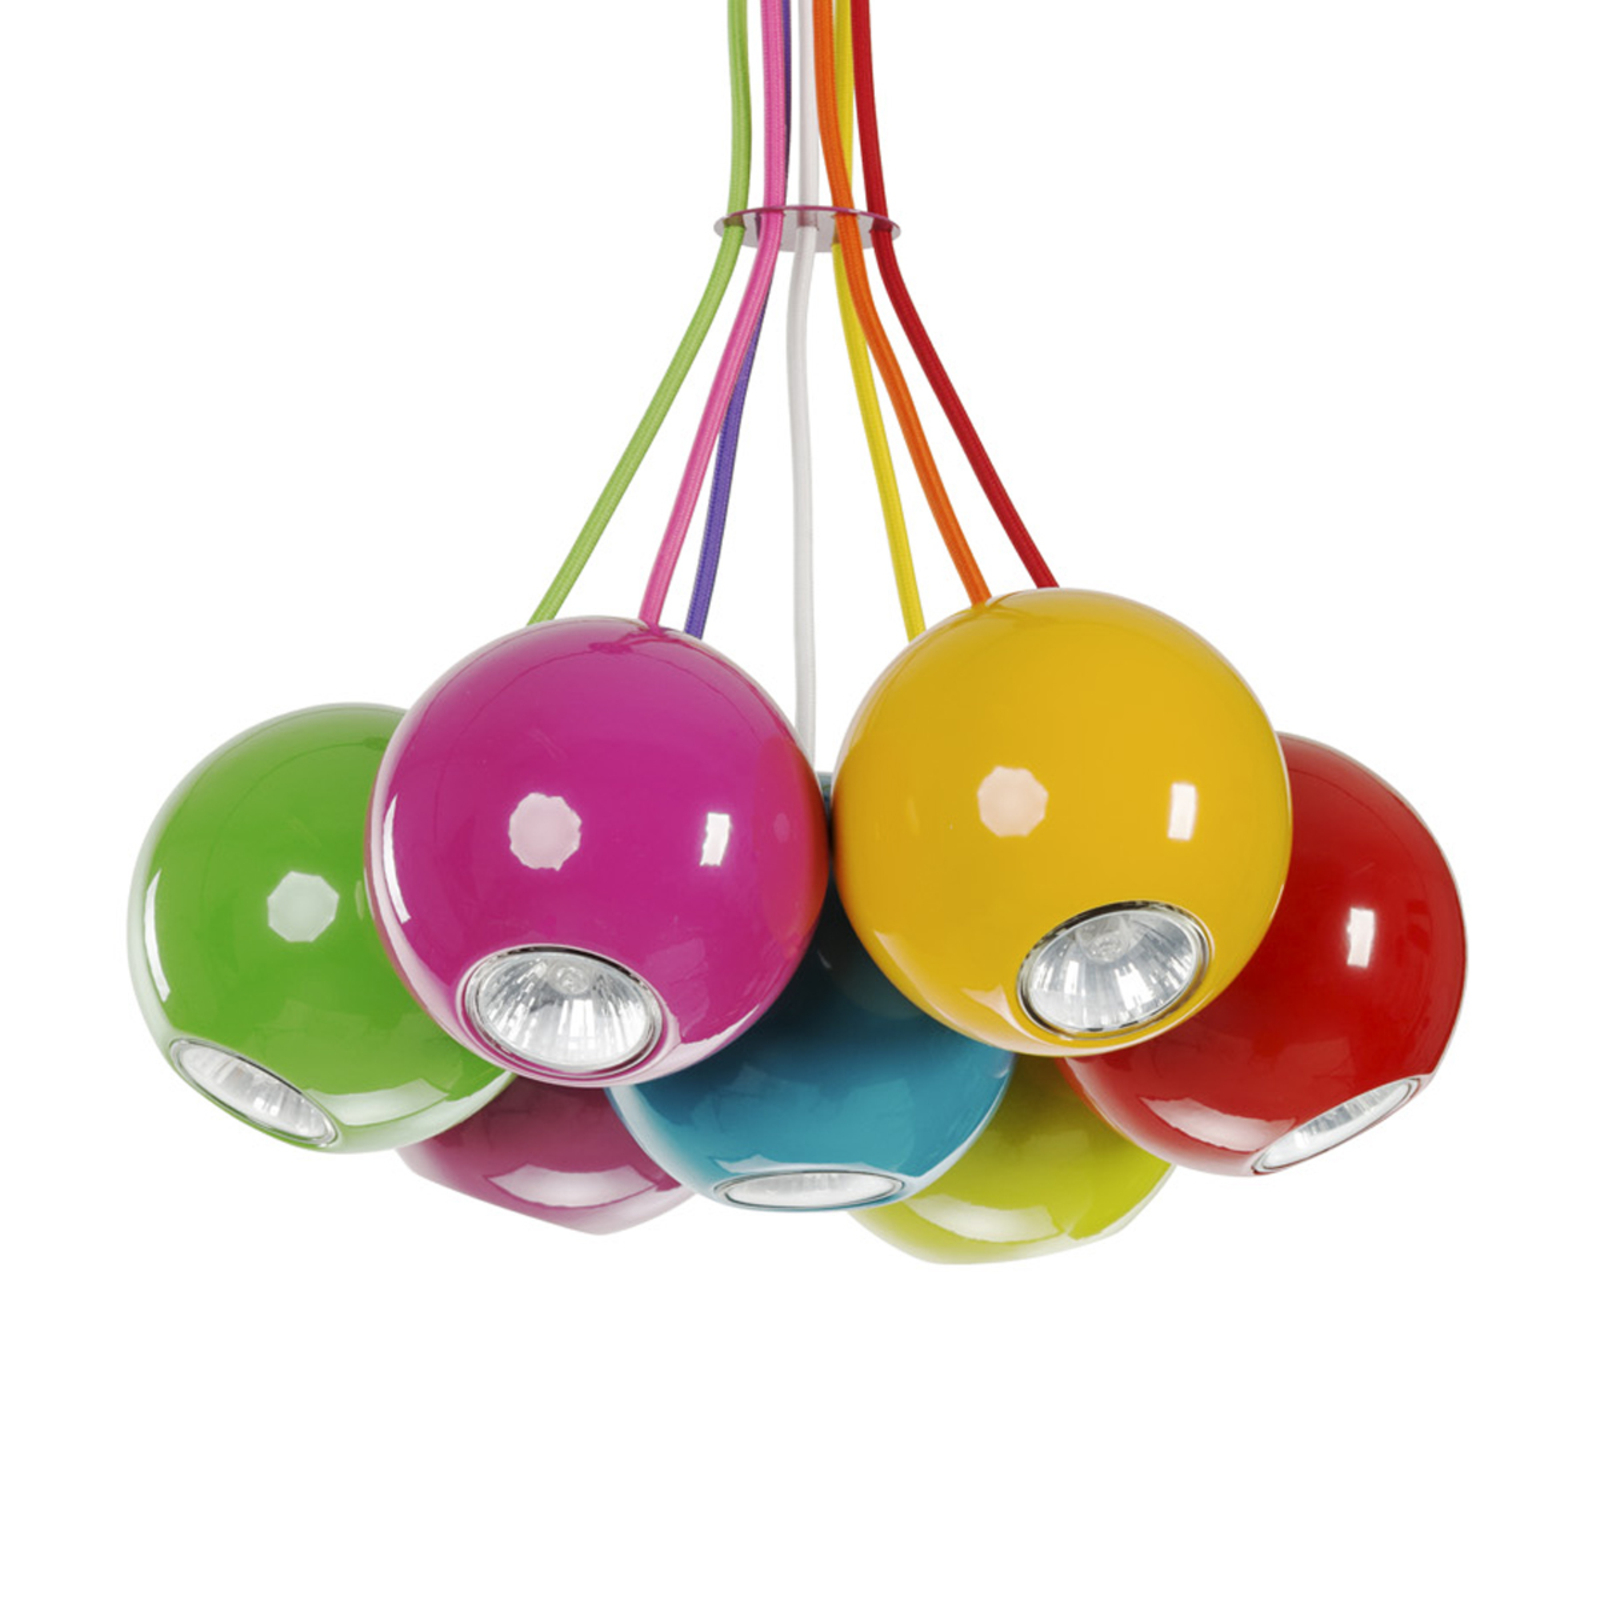 Suspension Malwi VII avec sphères multicolores